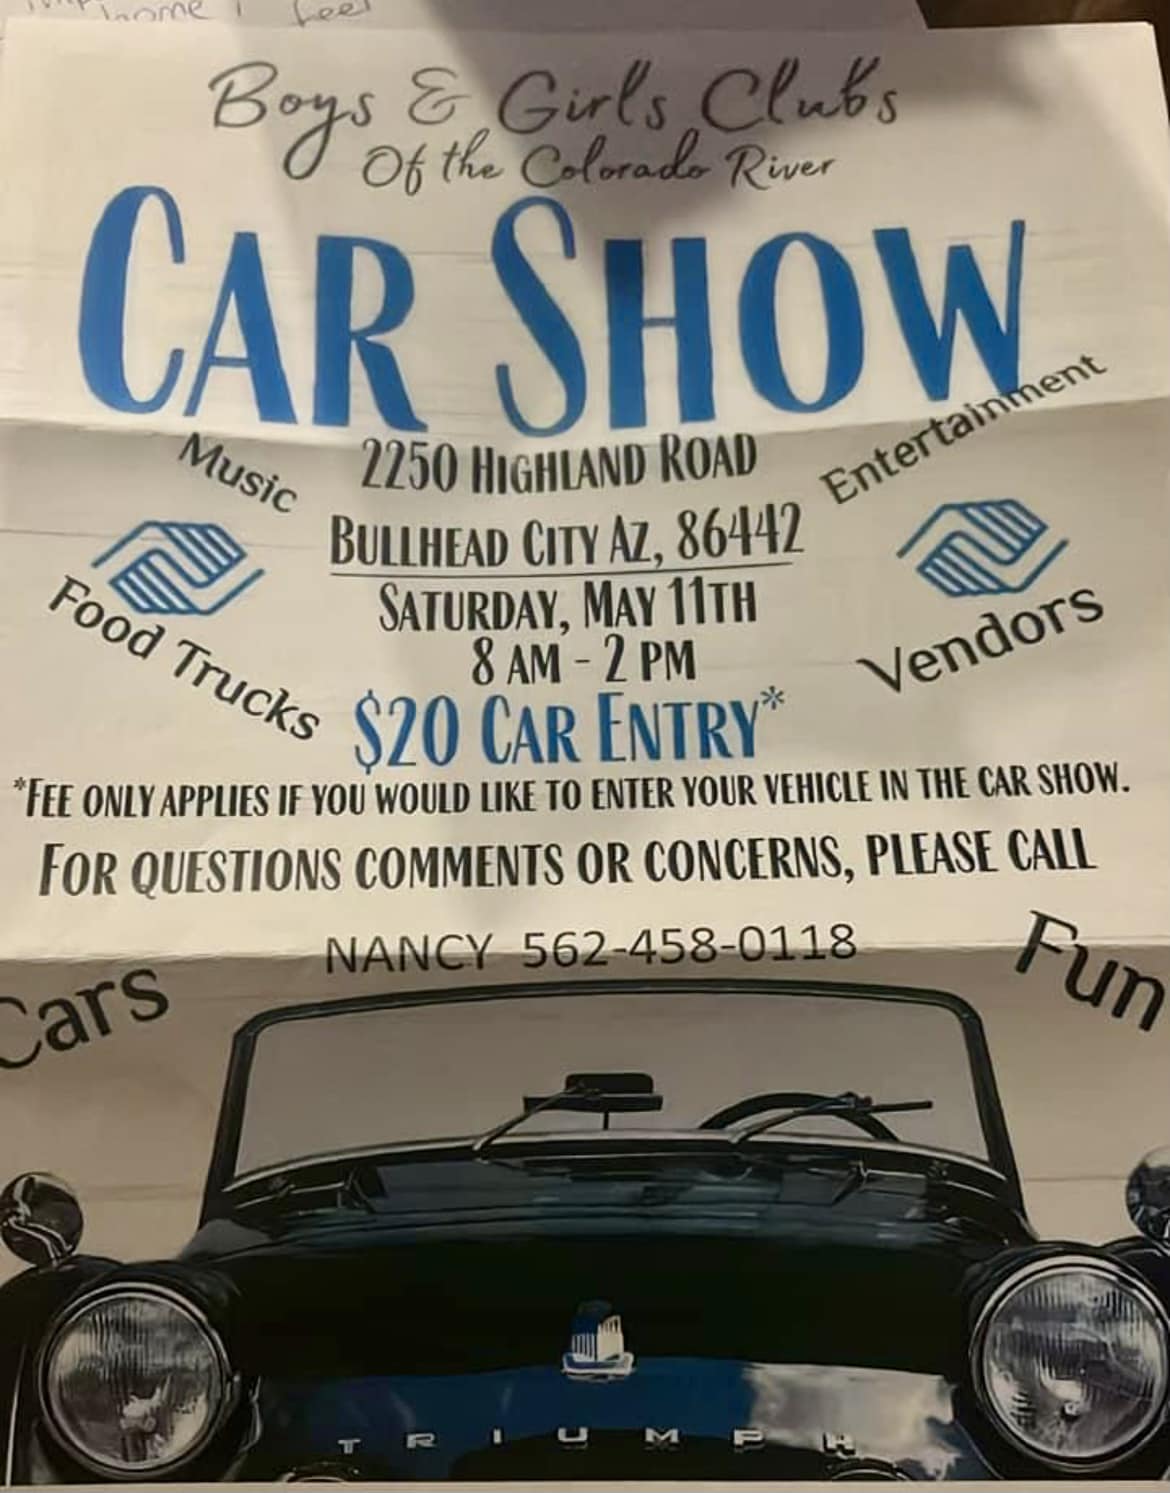 Boys & Girls Club’s Car Show